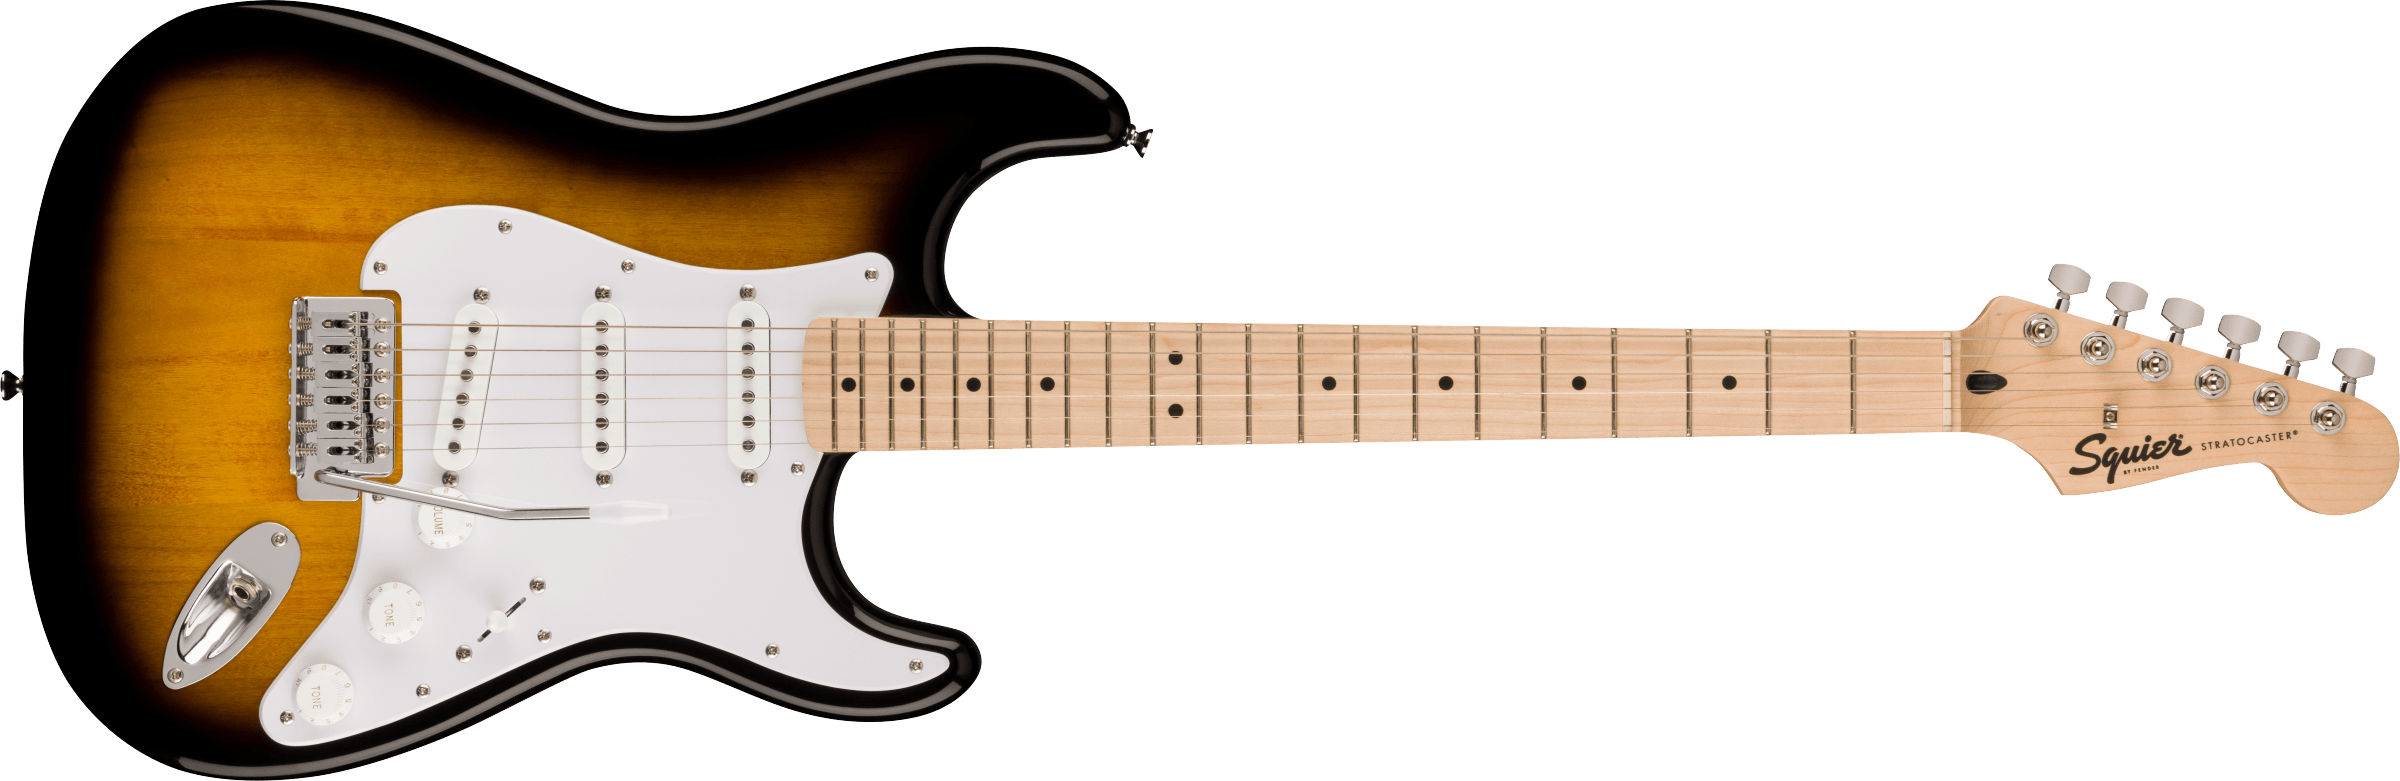 Se Fender Squier Sonic Stratocaster El-guitar (Sunburst) hos Drum City